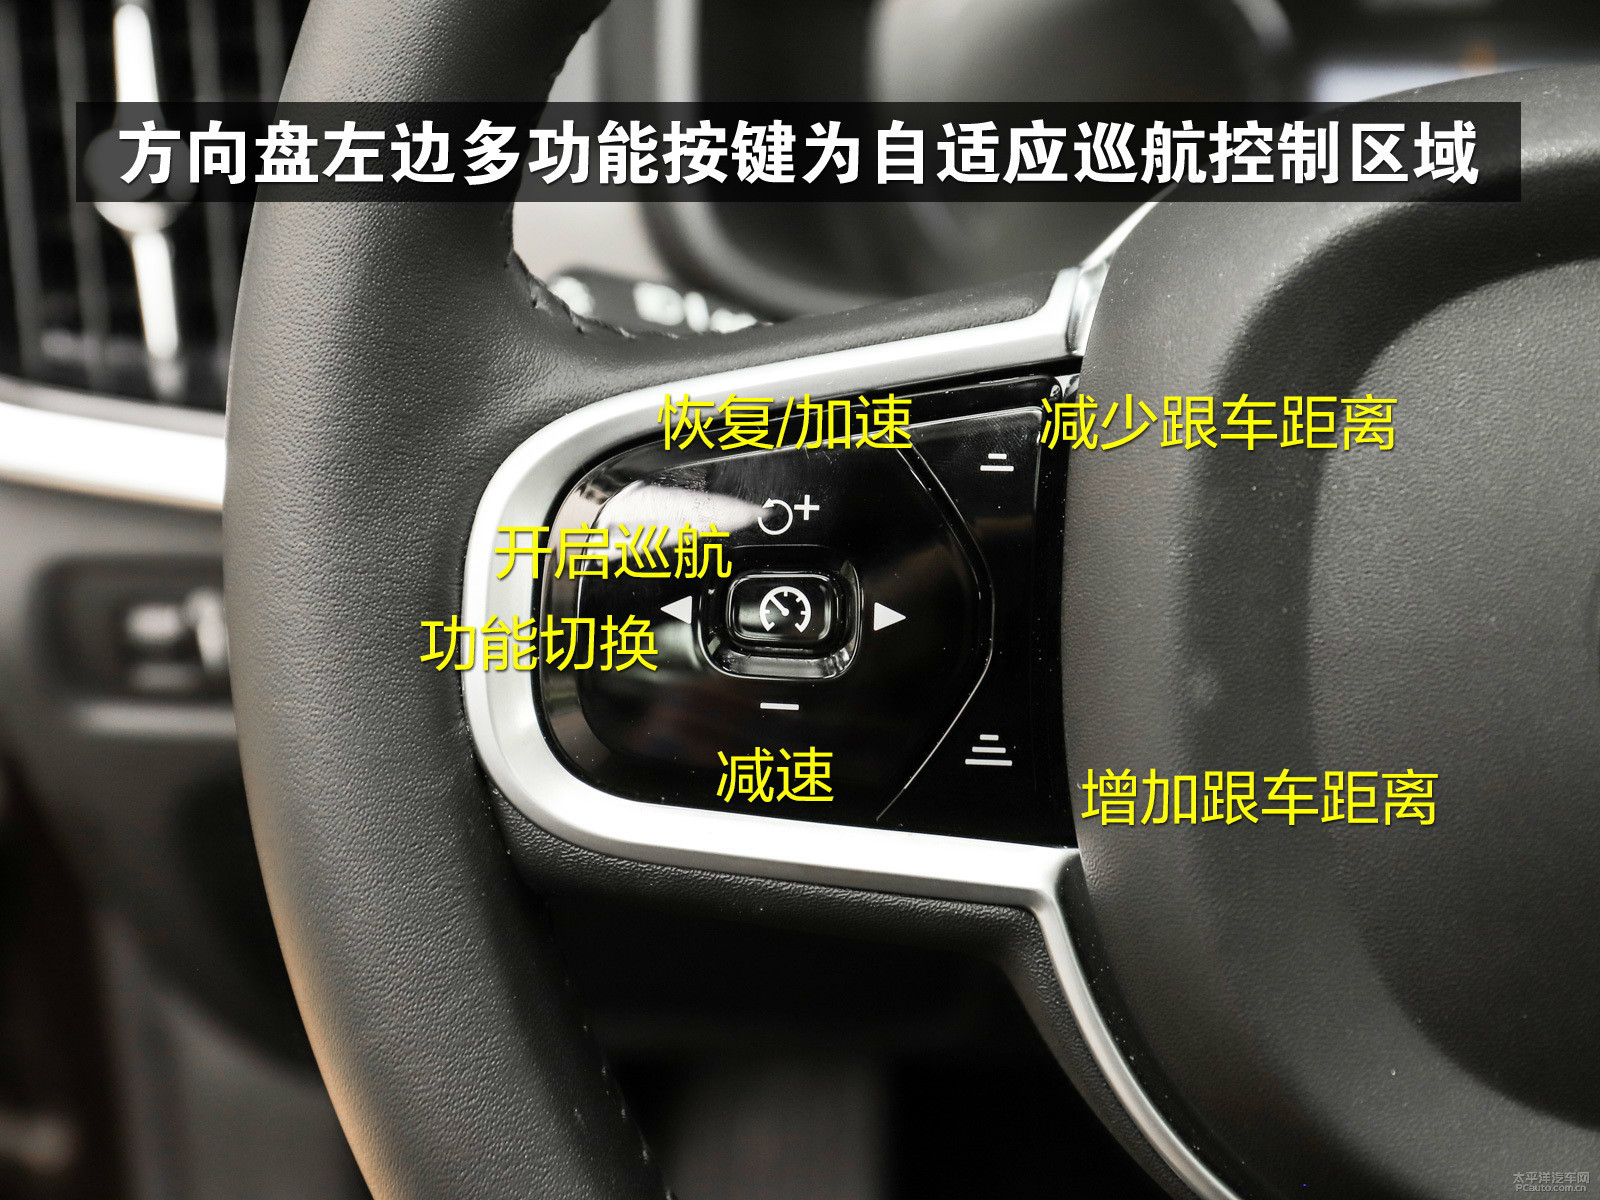 方向盘左边多功能按键为自适应巡航控制区域方向盘右下侧为前后雨刷